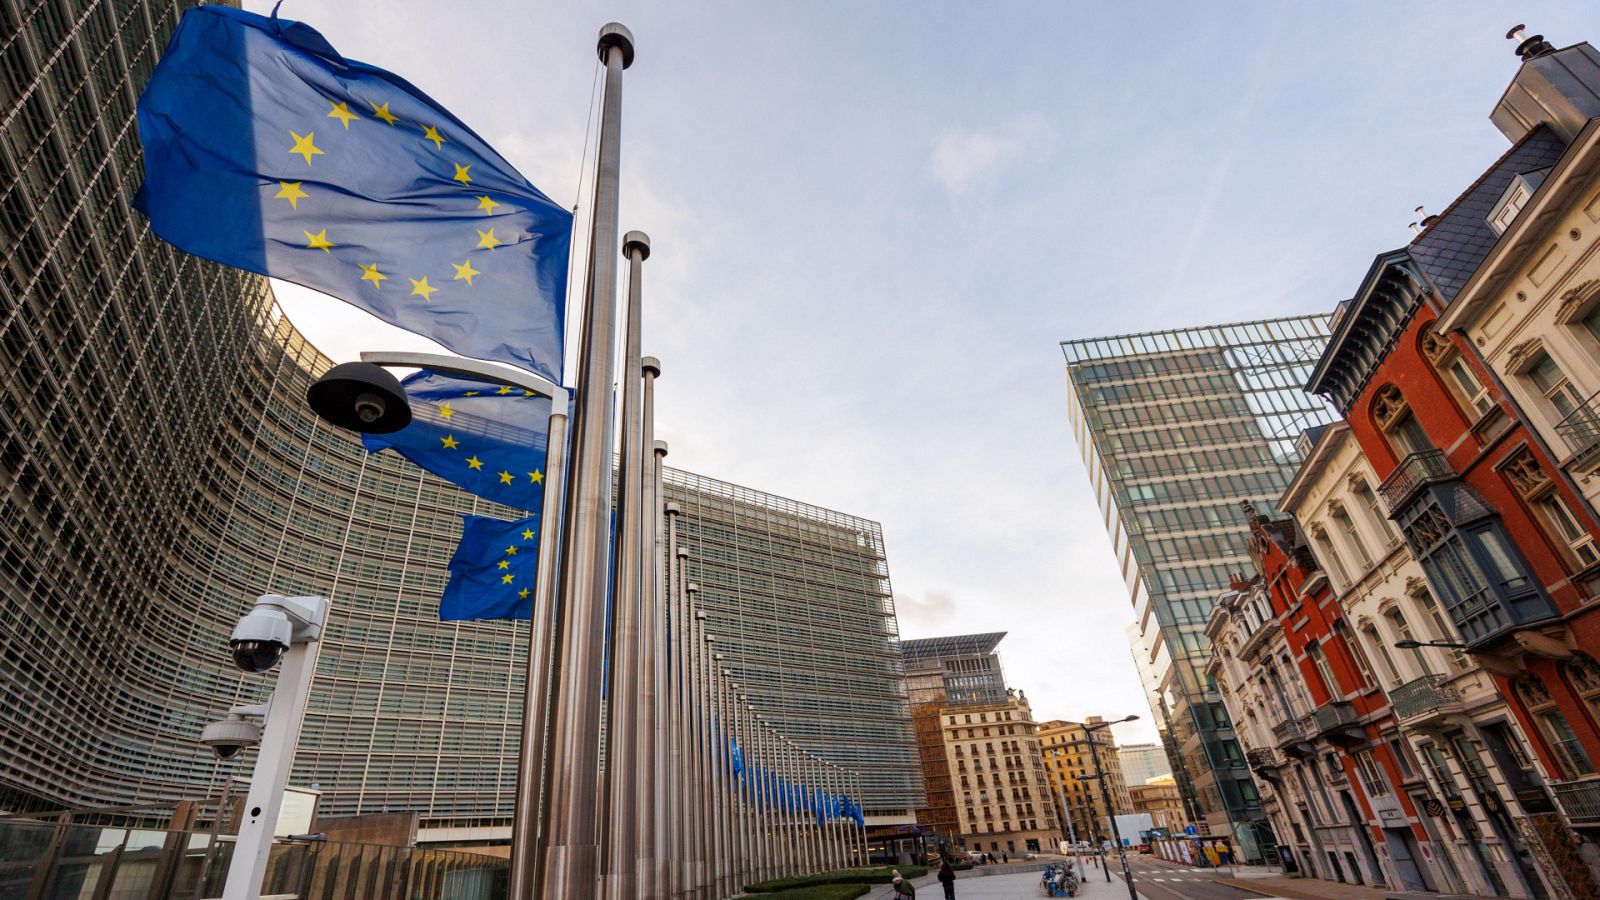 Bélgica toma el releveo a España en el Consejo de la Unión Europea